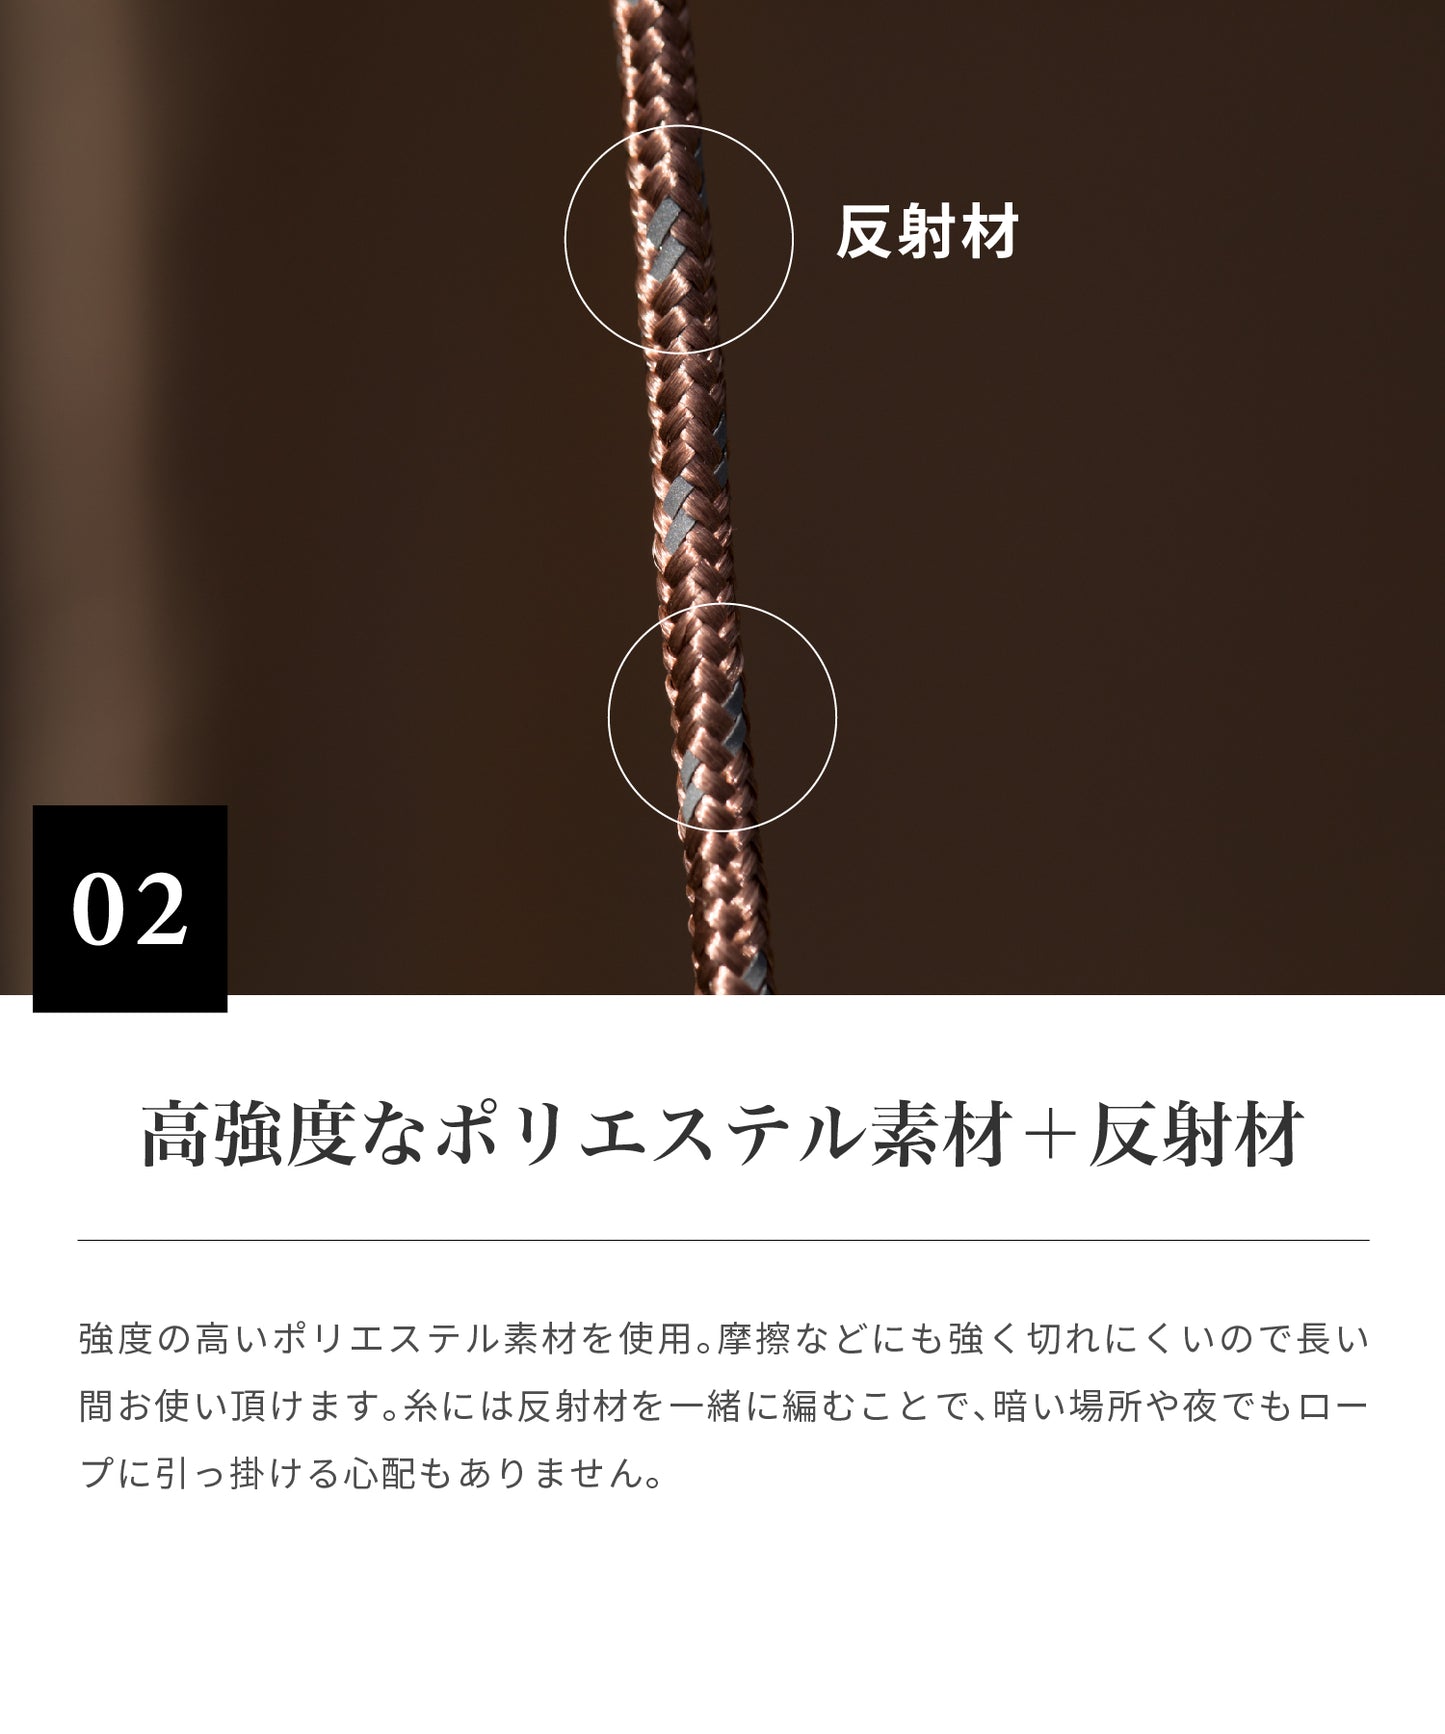 【 Deco de rope 】 デコデロープ ガイロープ 4mm 1セット(6本入り)